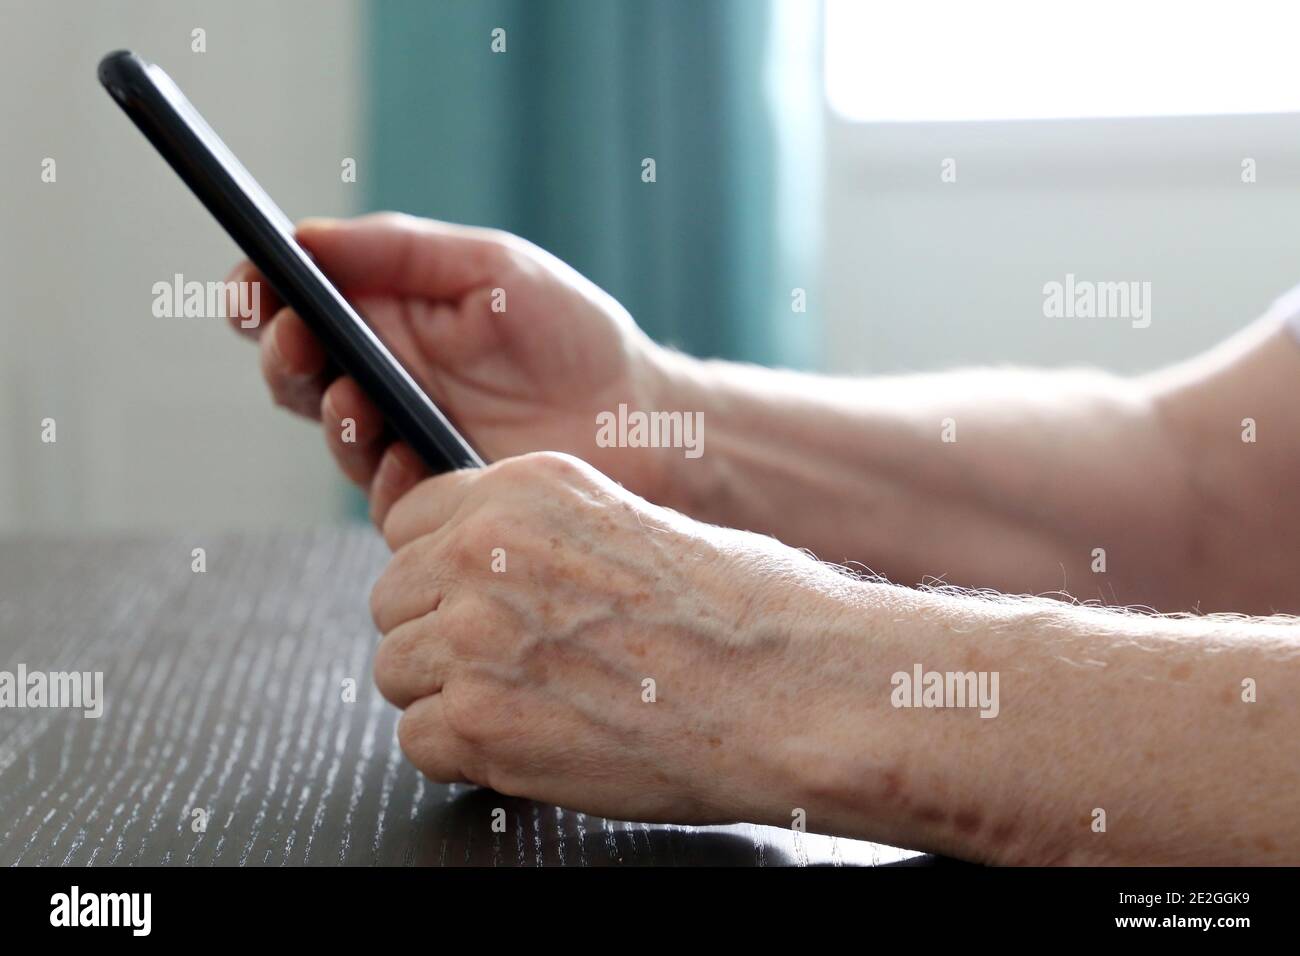 Ältere Frau mit Smartphone am Tisch sitzend, Handy in faltigen weiblichen Händen. Konzept der Online-Kommunikation im Ruhestand Stockfoto